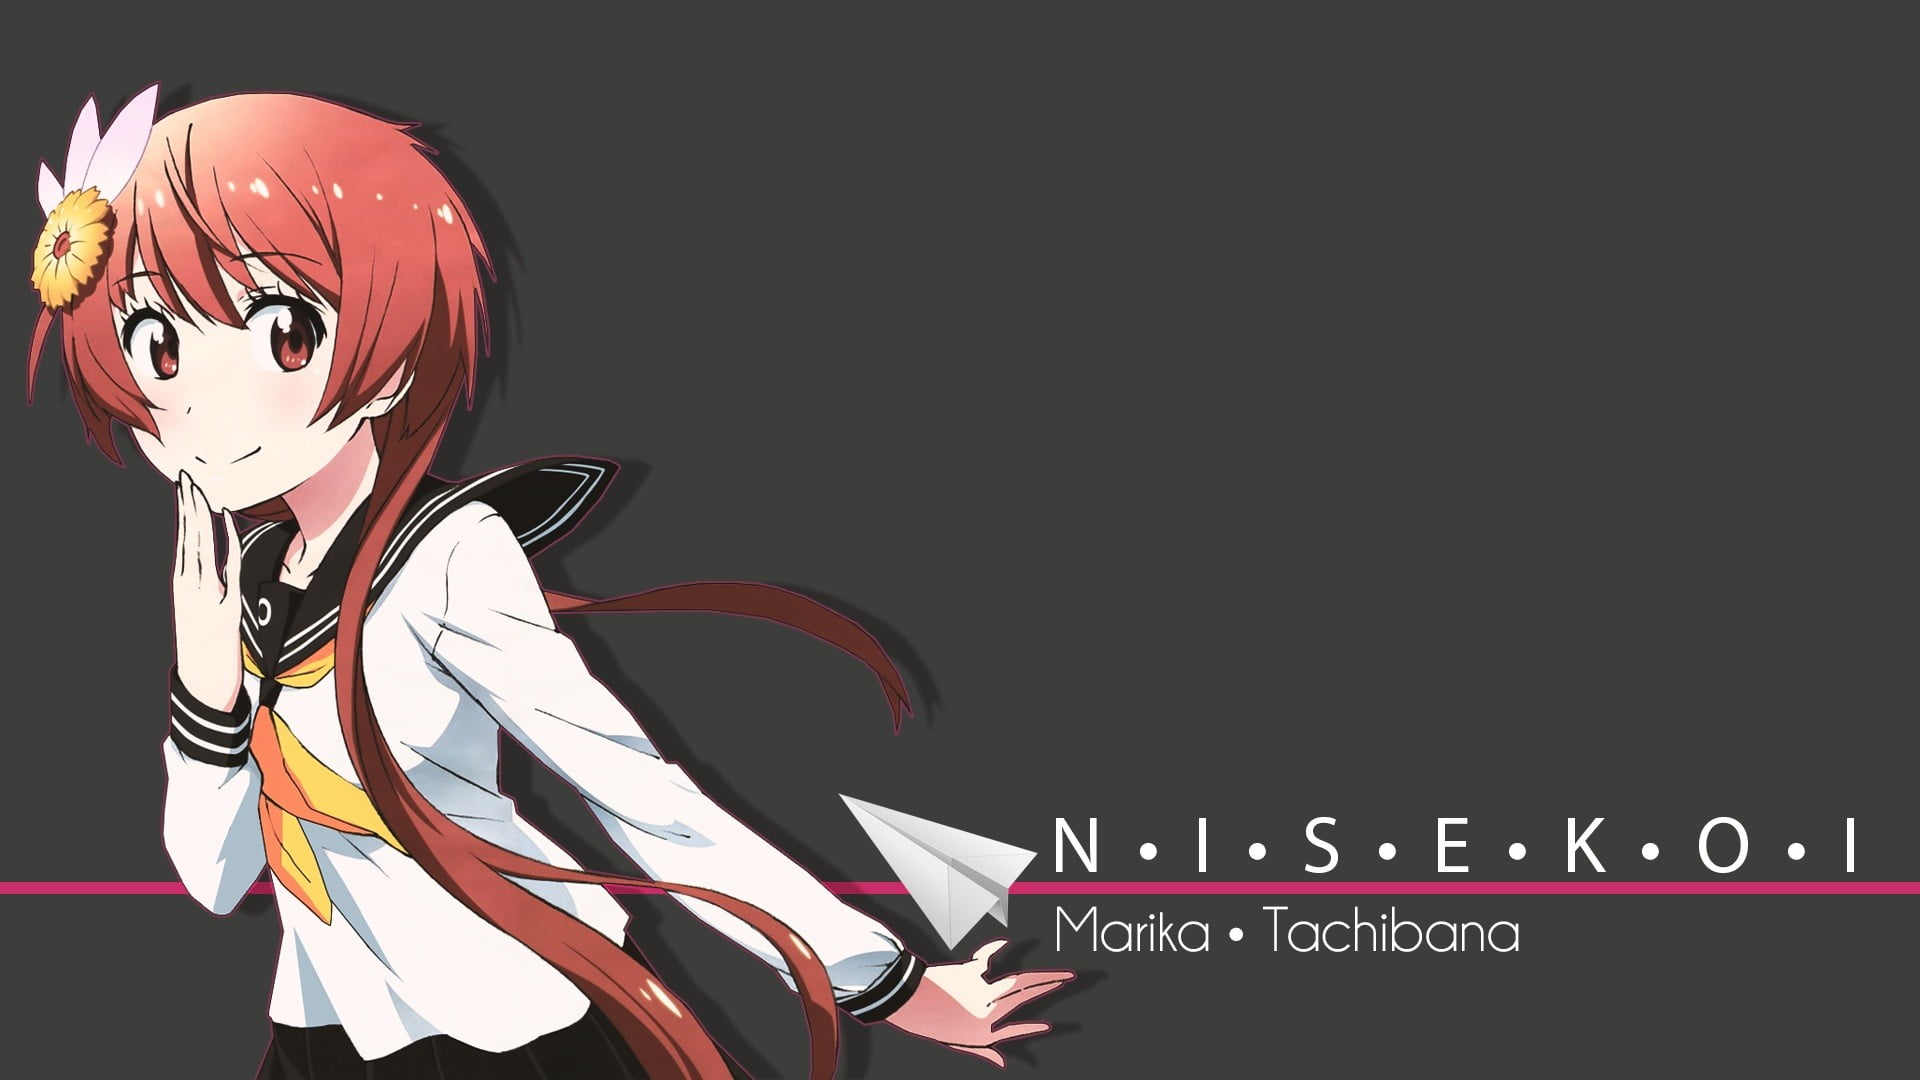 Niseko anime character illustration, anime girls, Nisekoi, school uniform